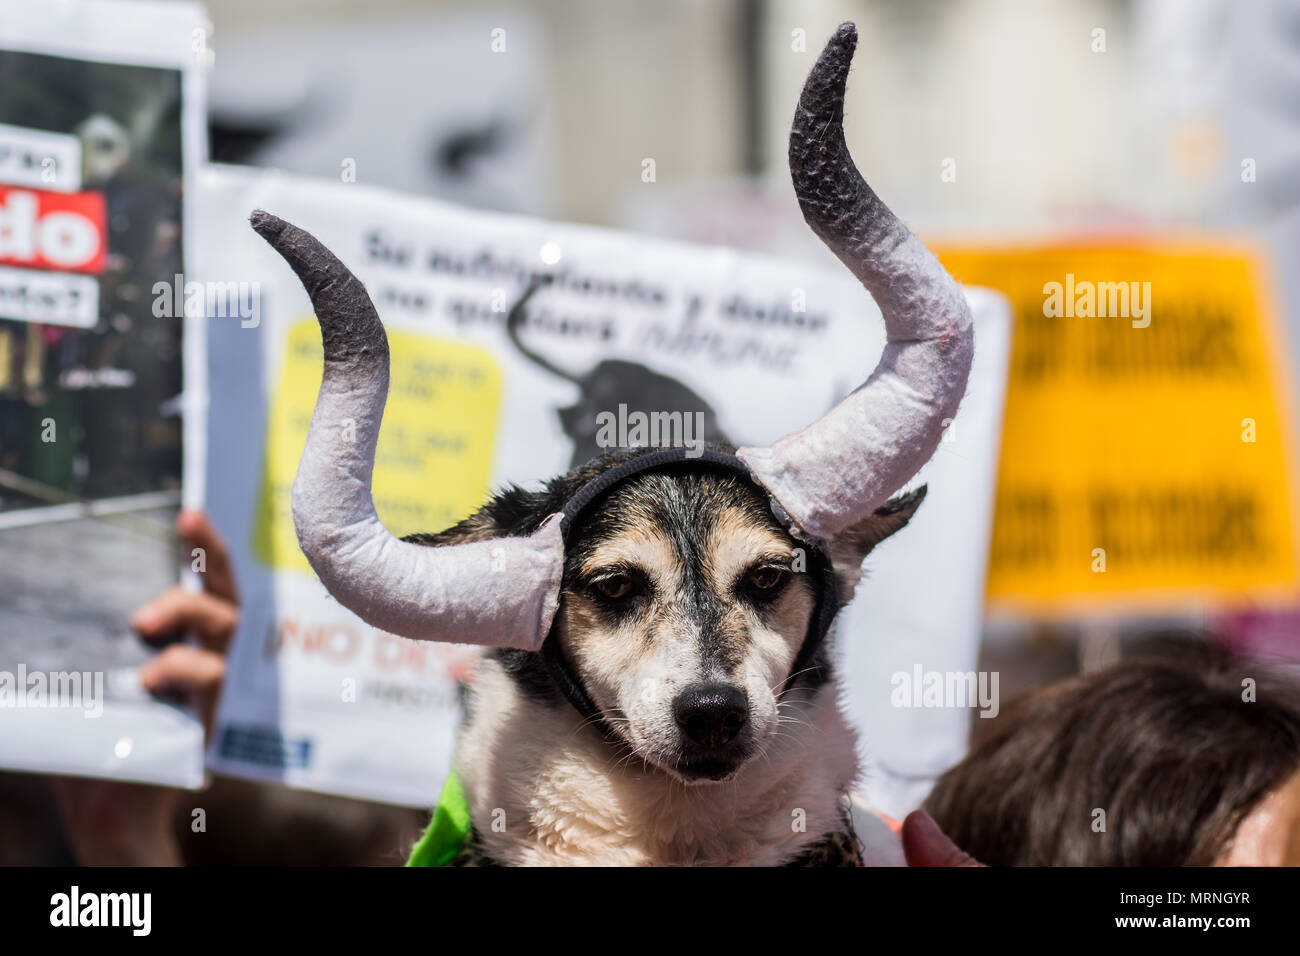 Madrid, Spanien. 27. Mai, 2018. Ein Hund mit Hörner des Stieres dargestellt, während einer Demonstration Demonstration unter dem Motto "Stierkampf ist Gewalt" anspruchsvolle Stierkampf und das Leiden von Tieren abzuschaffen, in Madrid, Spanien. Credit: Marcos del Mazo/Alamy leben Nachrichten Stockfoto